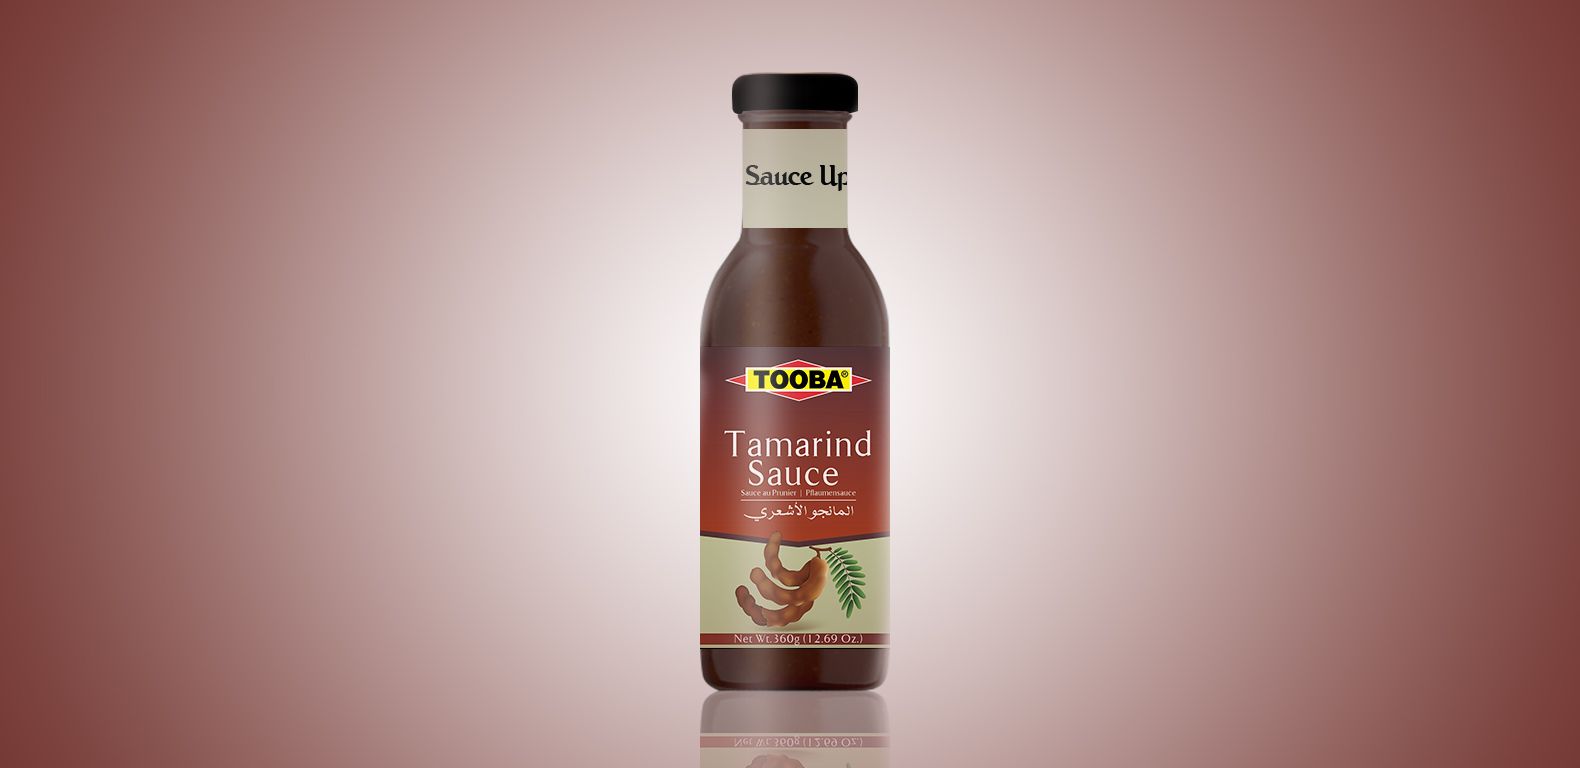 Packaging-Design-Tooba-Sauces-1580x768-Tamarind-Sauce